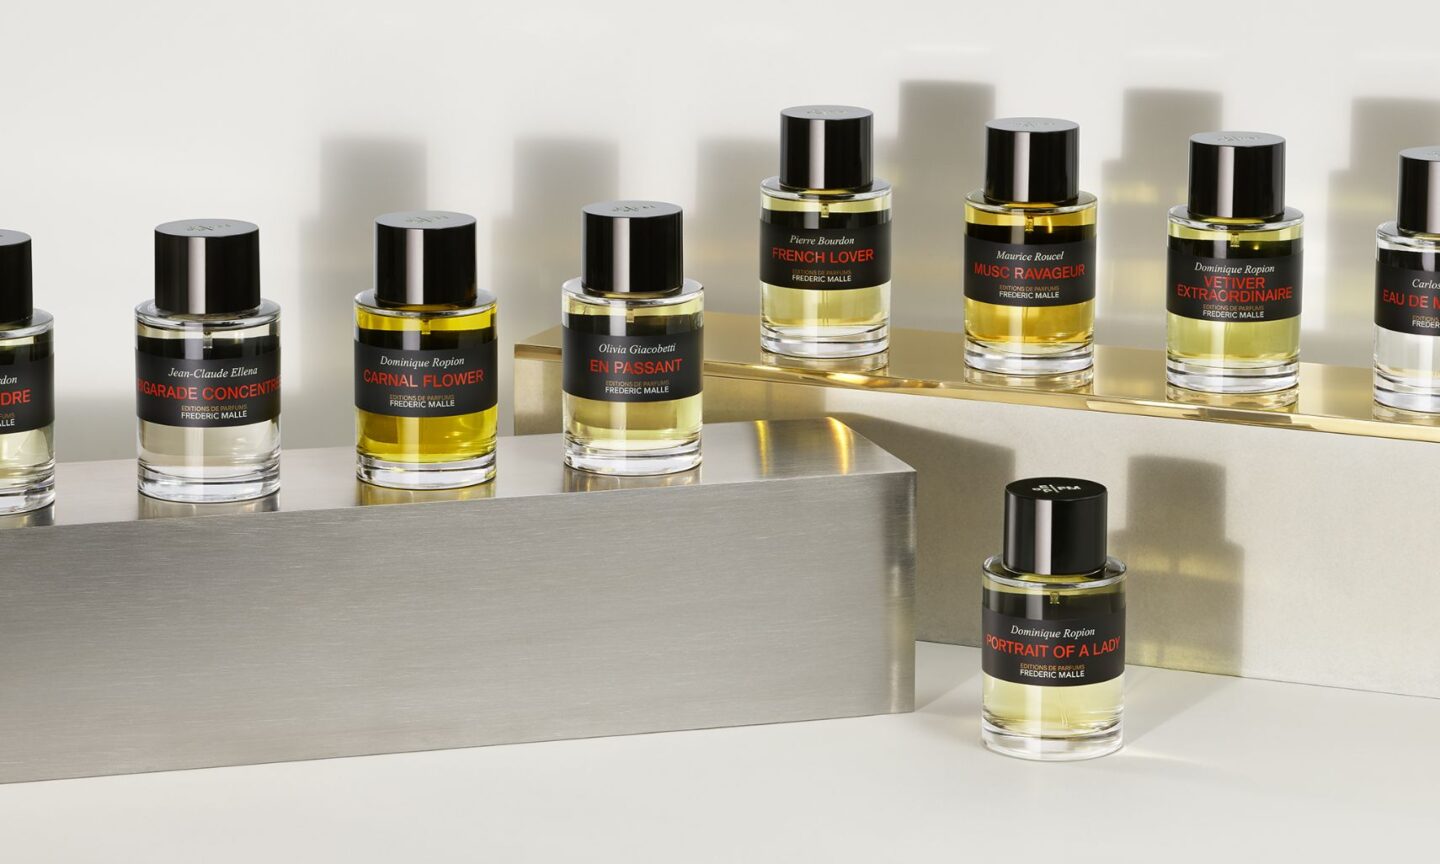 Frédéric Malle Editions de Parfums